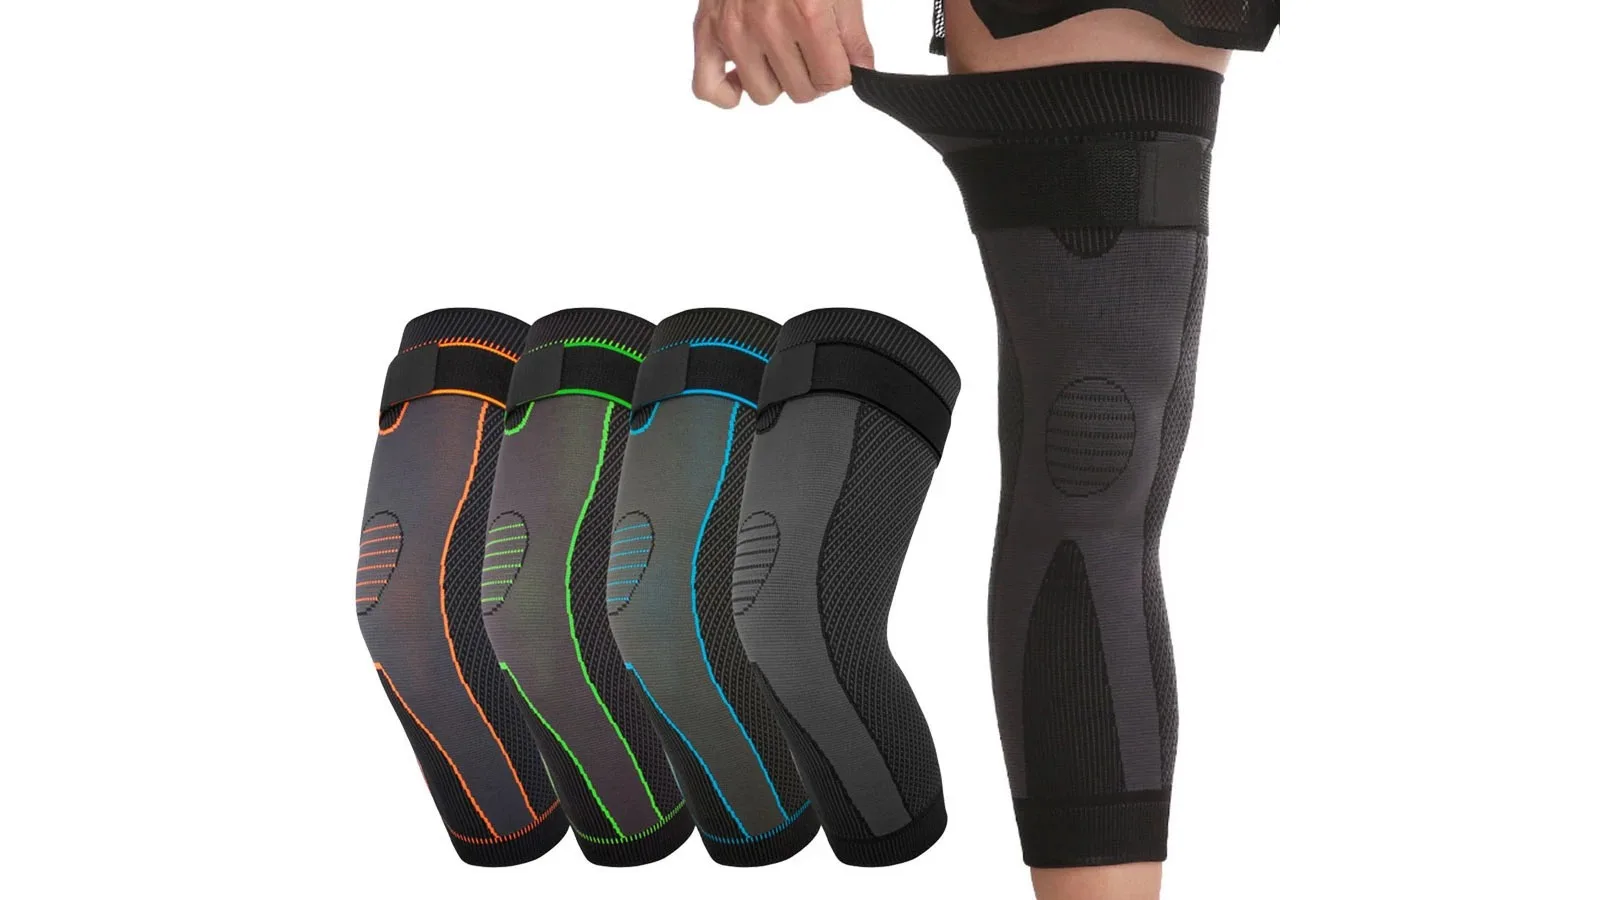 Full Leg Sleeves Long Compression Leg Sleeve Knee Sleeves Protect Leg For Men Women Buy Full